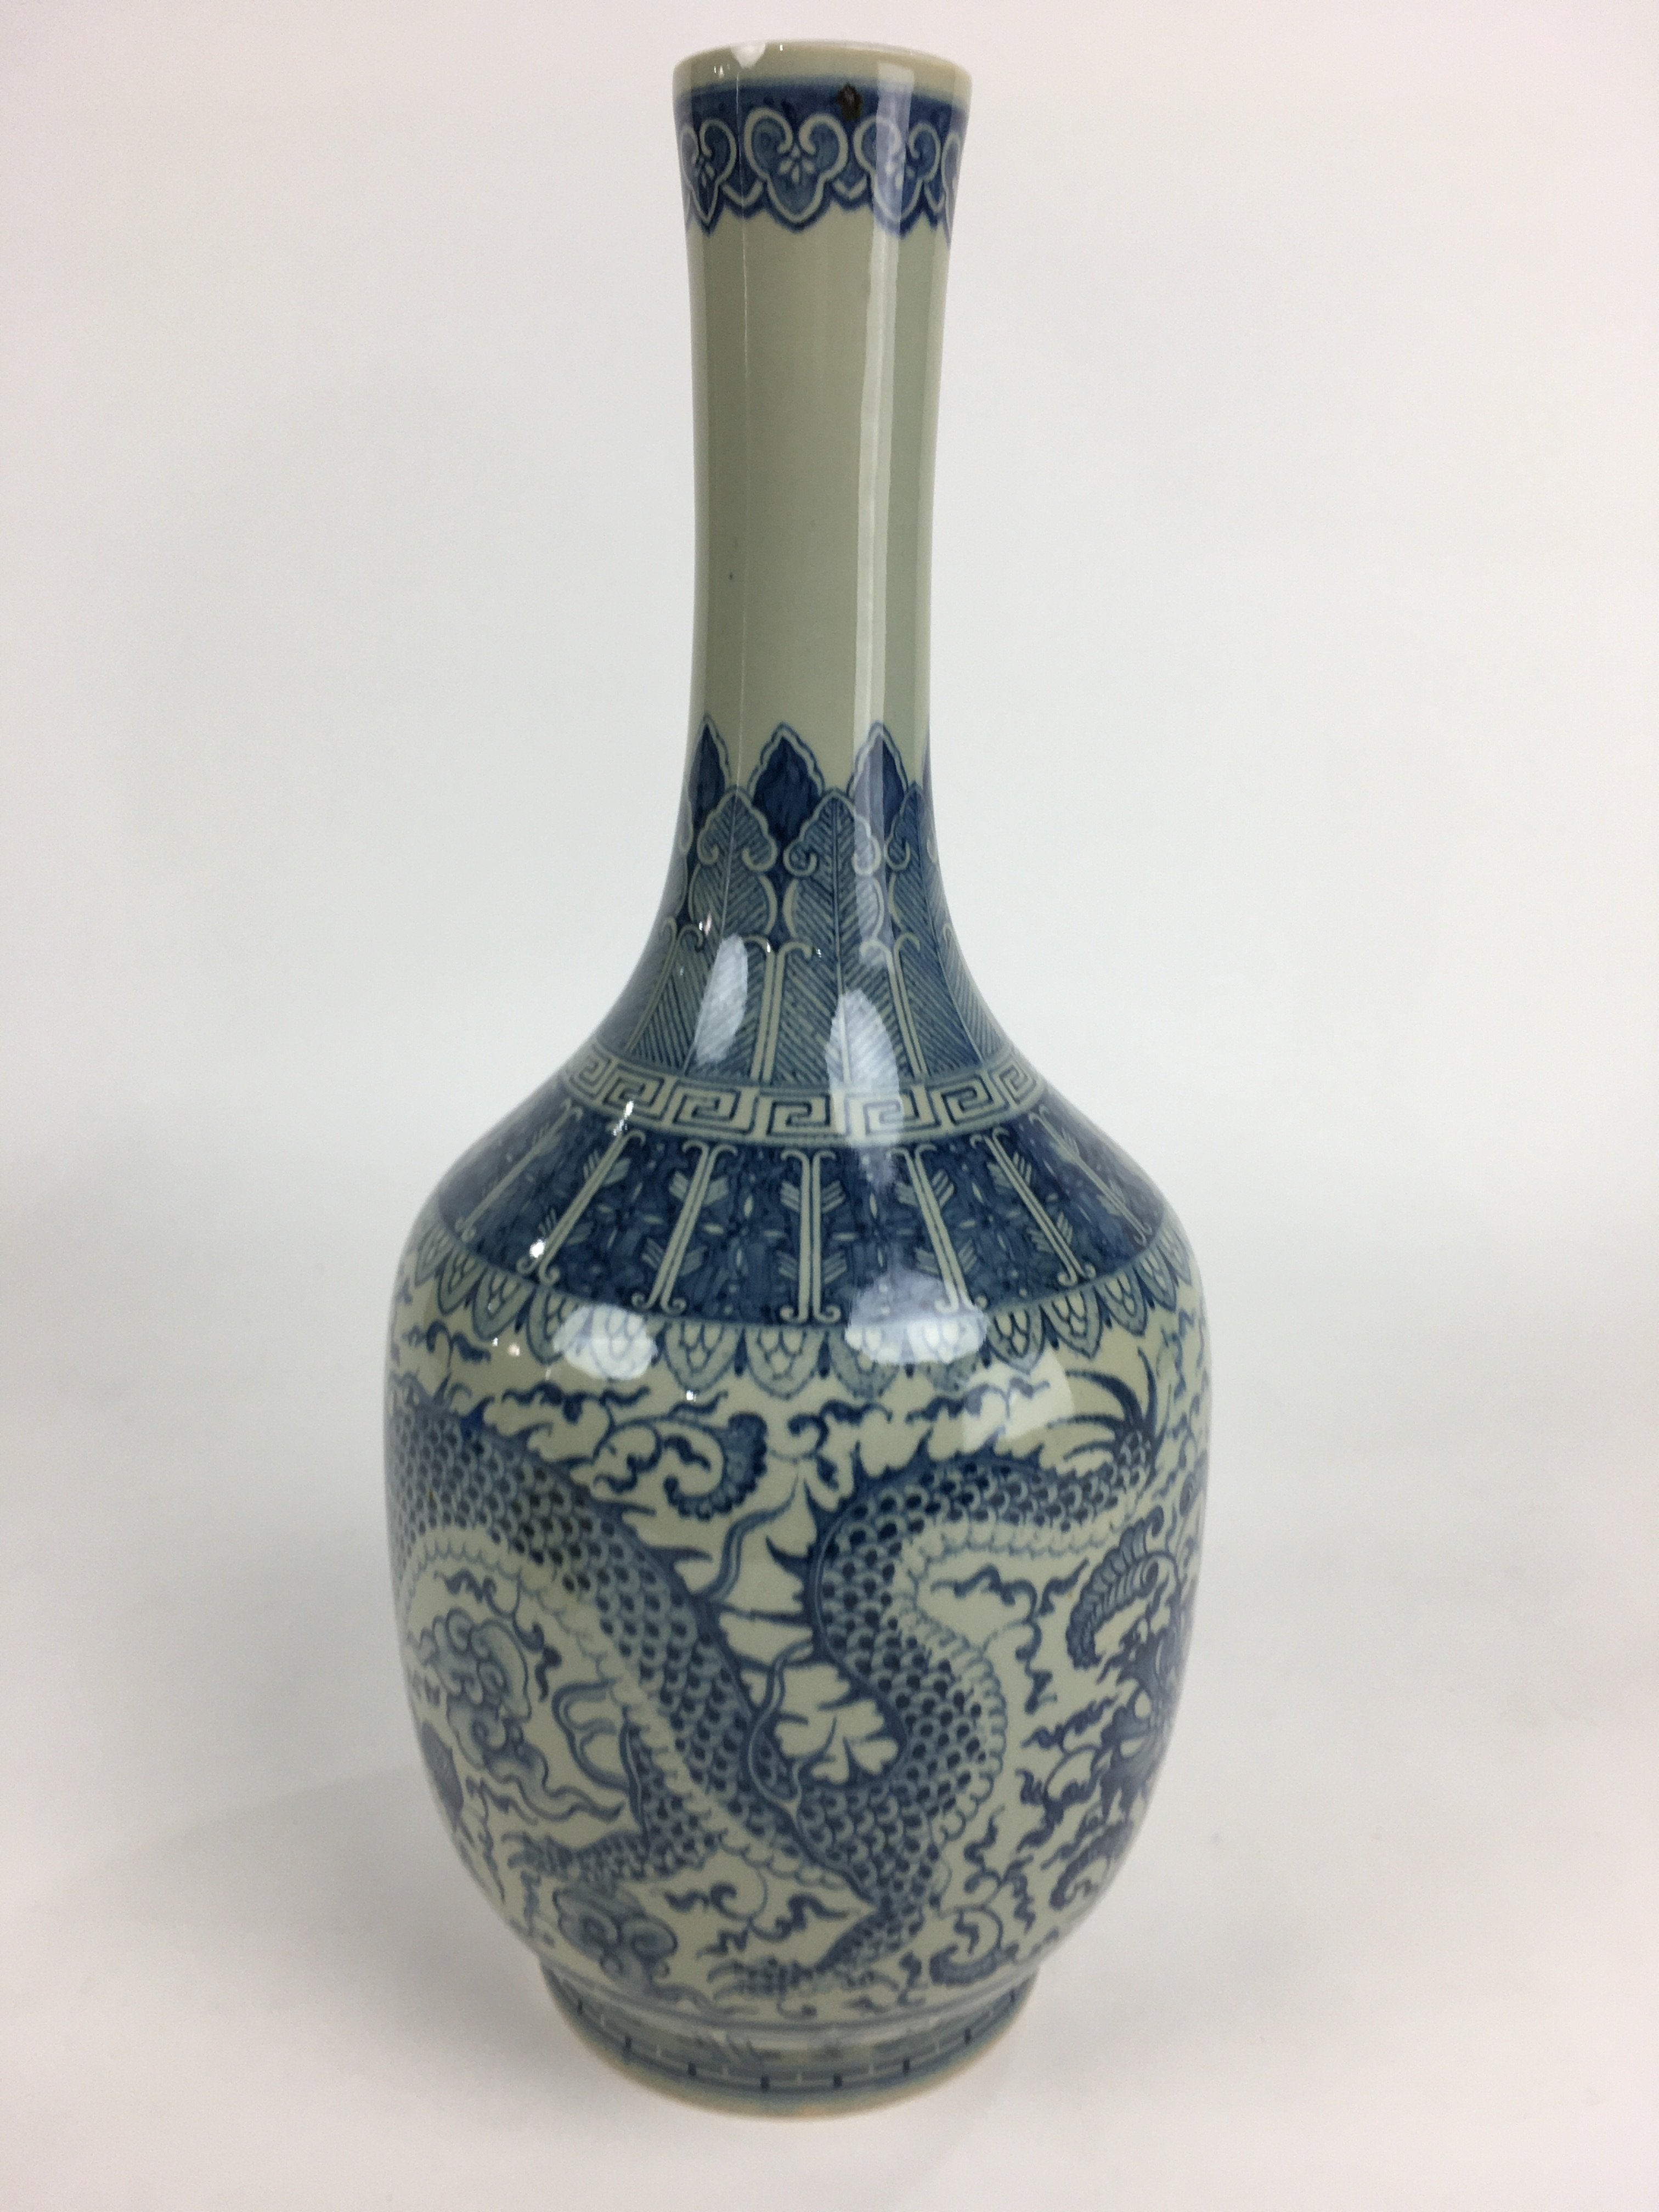 Japanese Ceramic Flower Vase Kabin Vtg Mino ware Gray Pottery Ikebana FV735